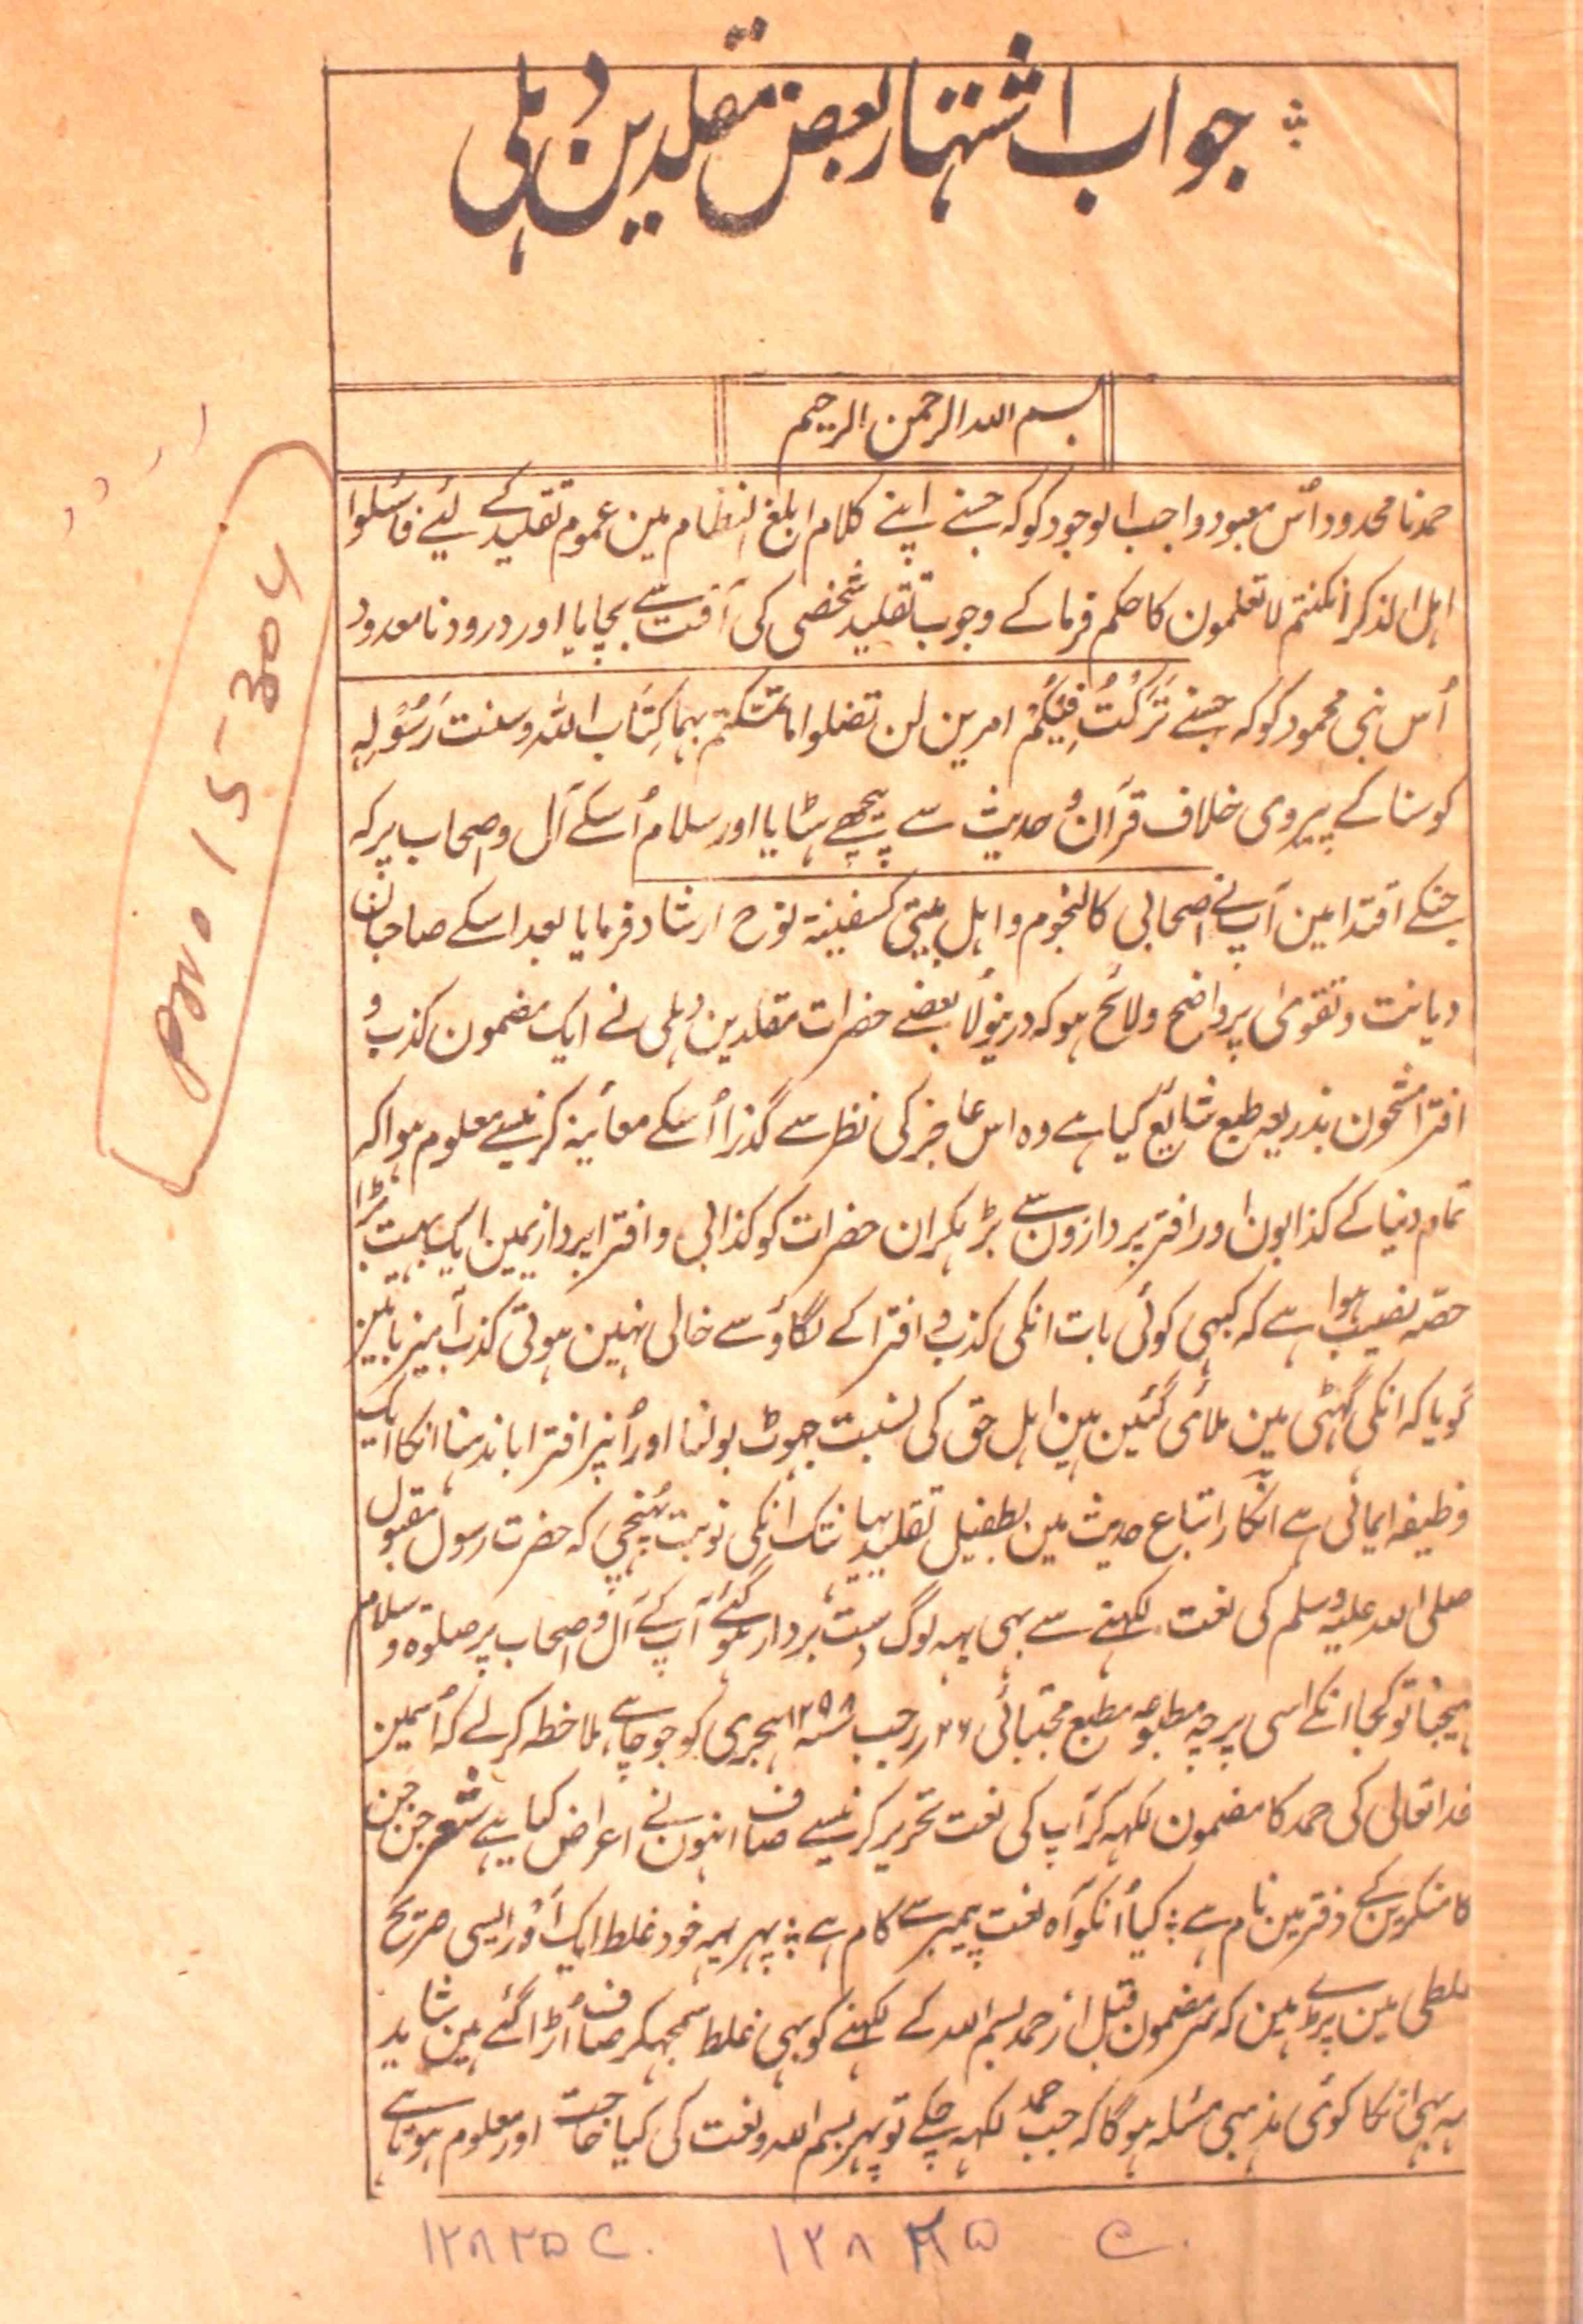 Jawab-e-Ishtihar Baz Muqalledeen-e-Delhi